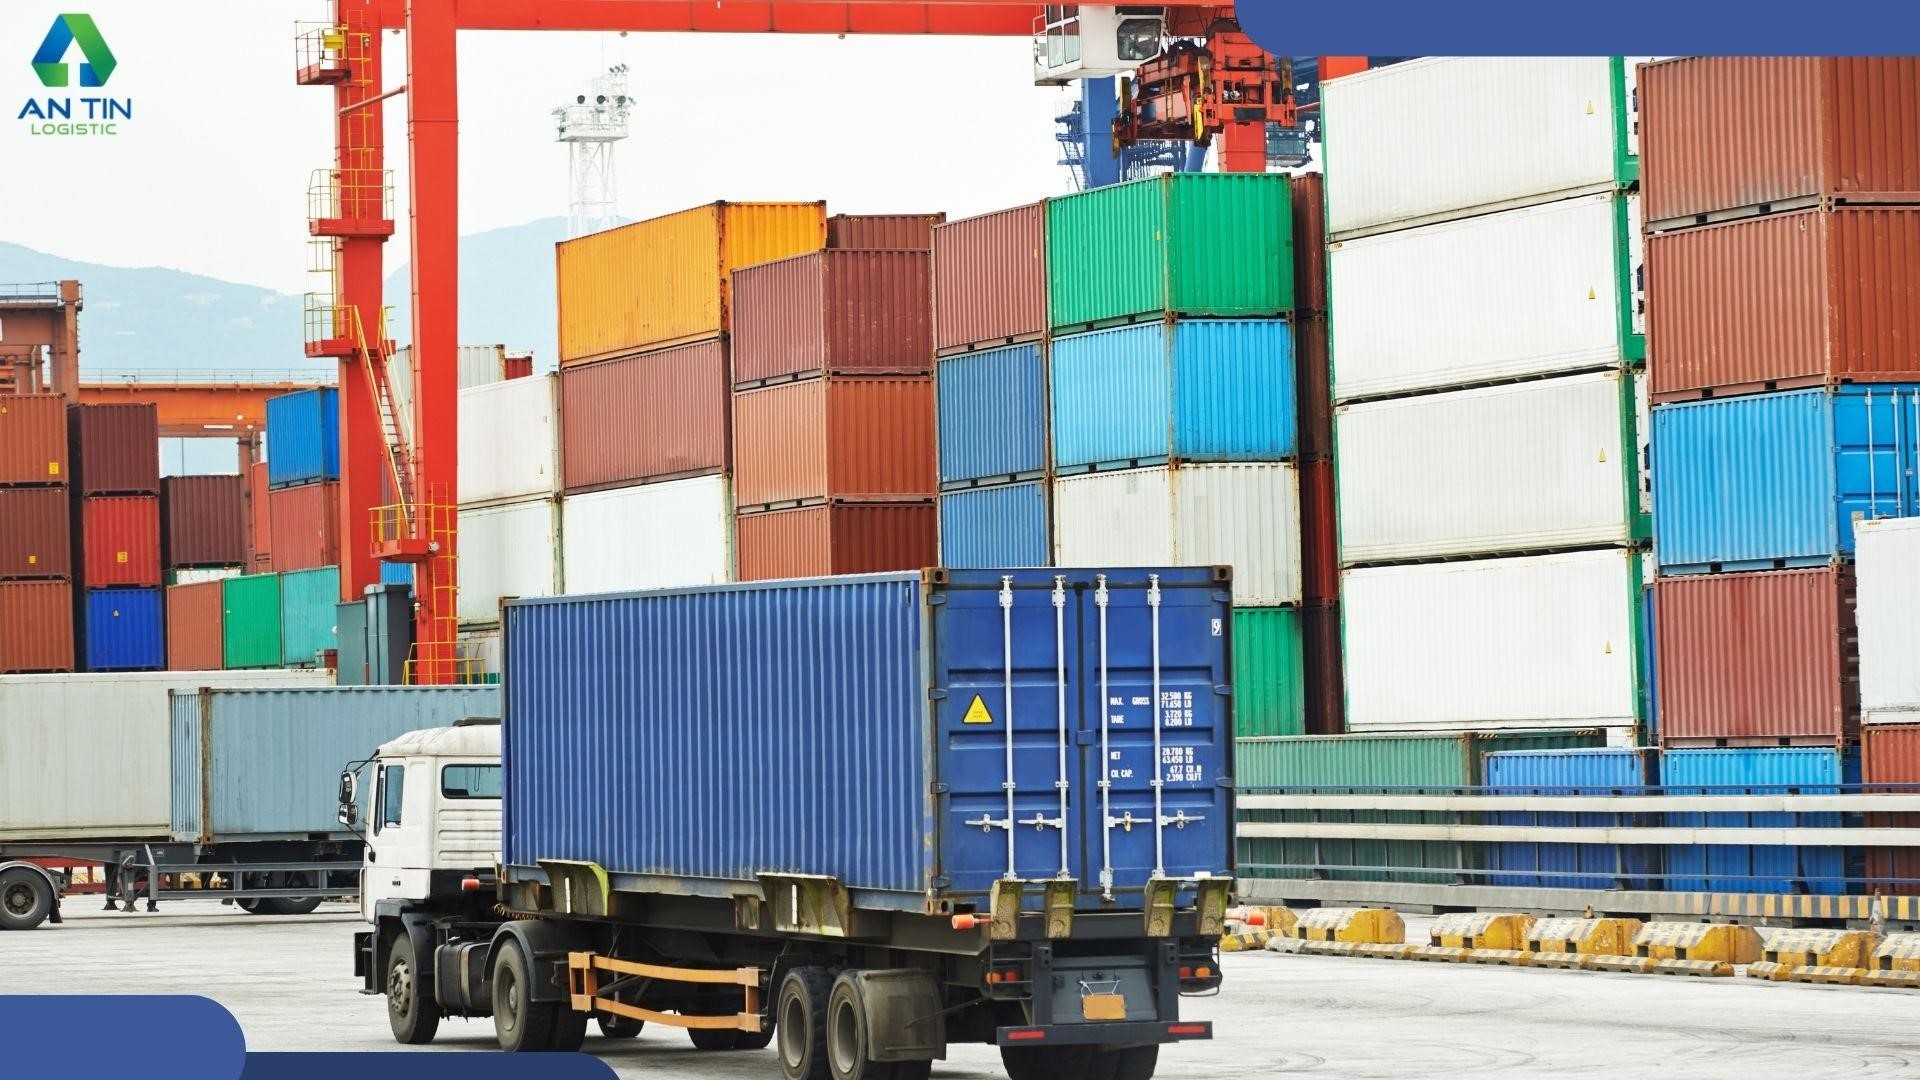 Hướng dẫn cách xử lý tình trạng Container rỗng bị hư hỏng sẵn từ hãng tàu